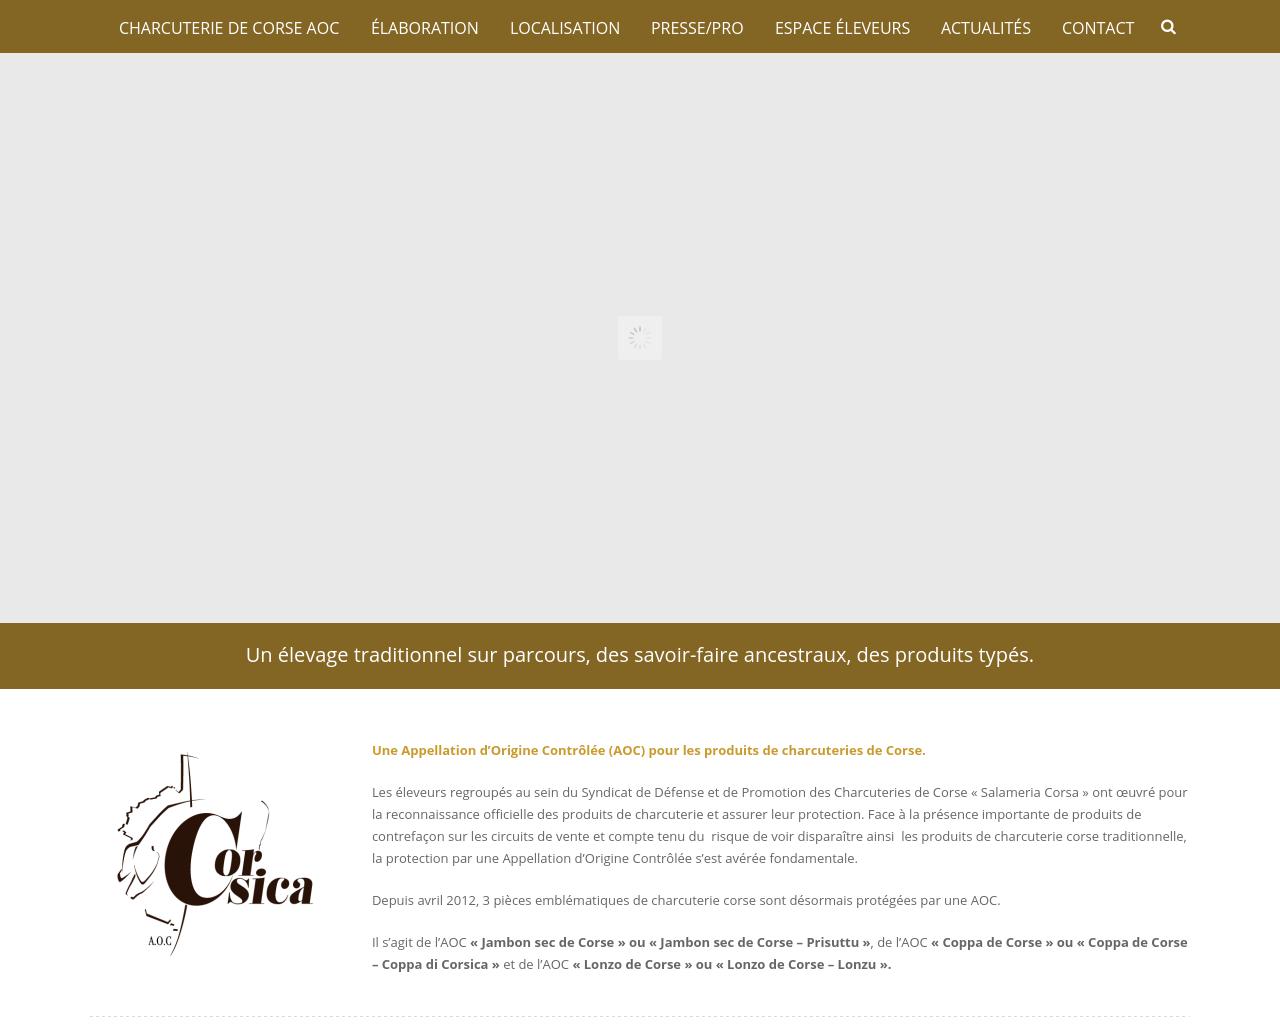 Syndicat de Défense et de Promotion des Charcuteries Corses « Salameria Corsa »